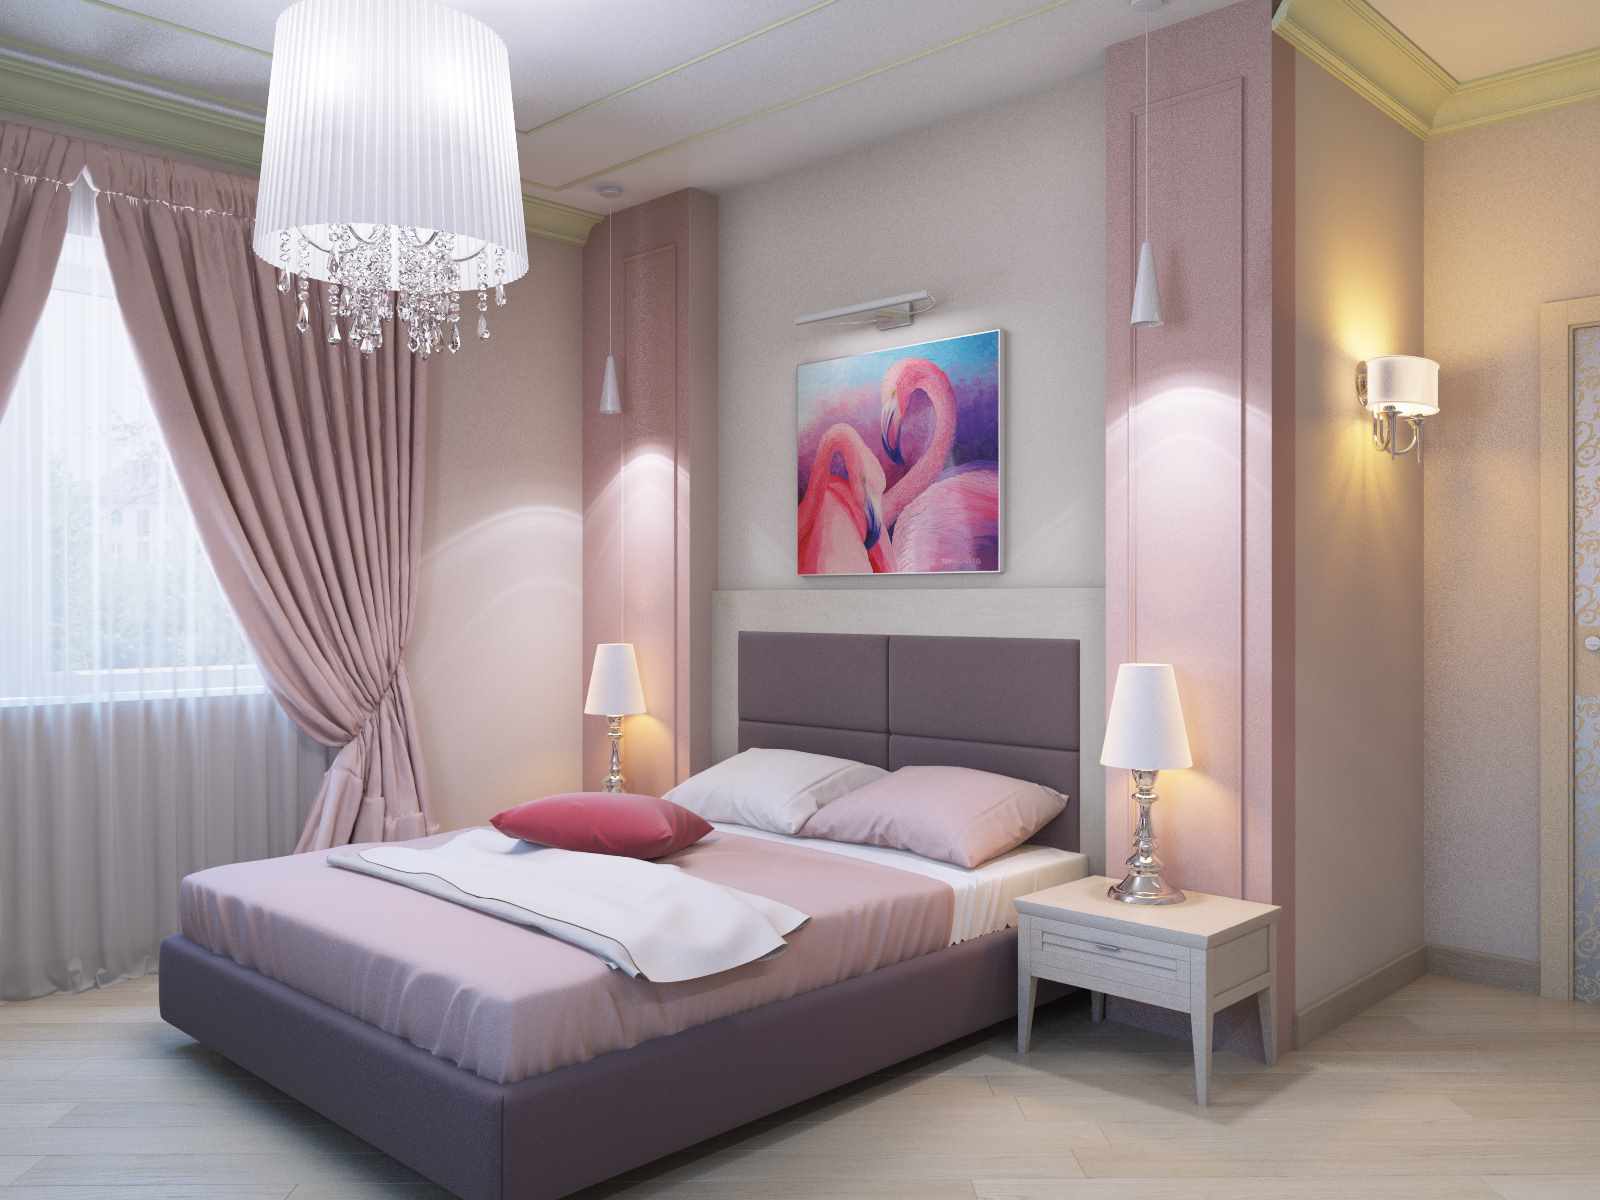 Un esempio di una brillante decorazione dello stile delle pareti della camera da letto